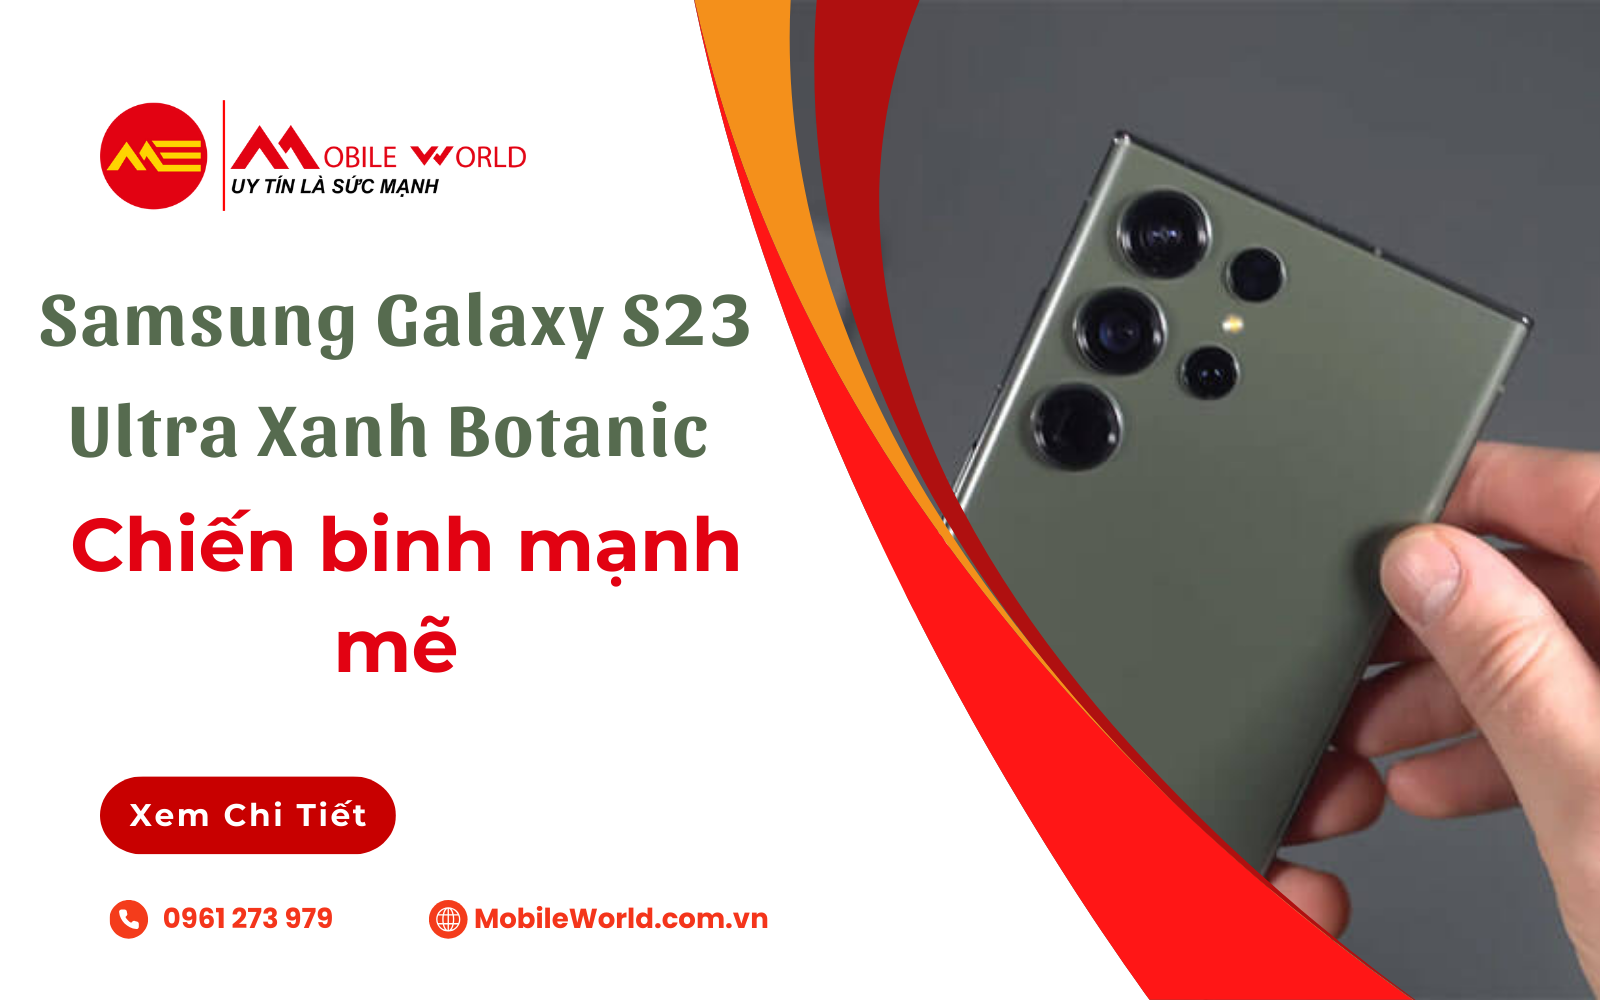 Samsung Galaxy S23 Ultra Xanh Botanic: Chiến binh mạnh mẽ